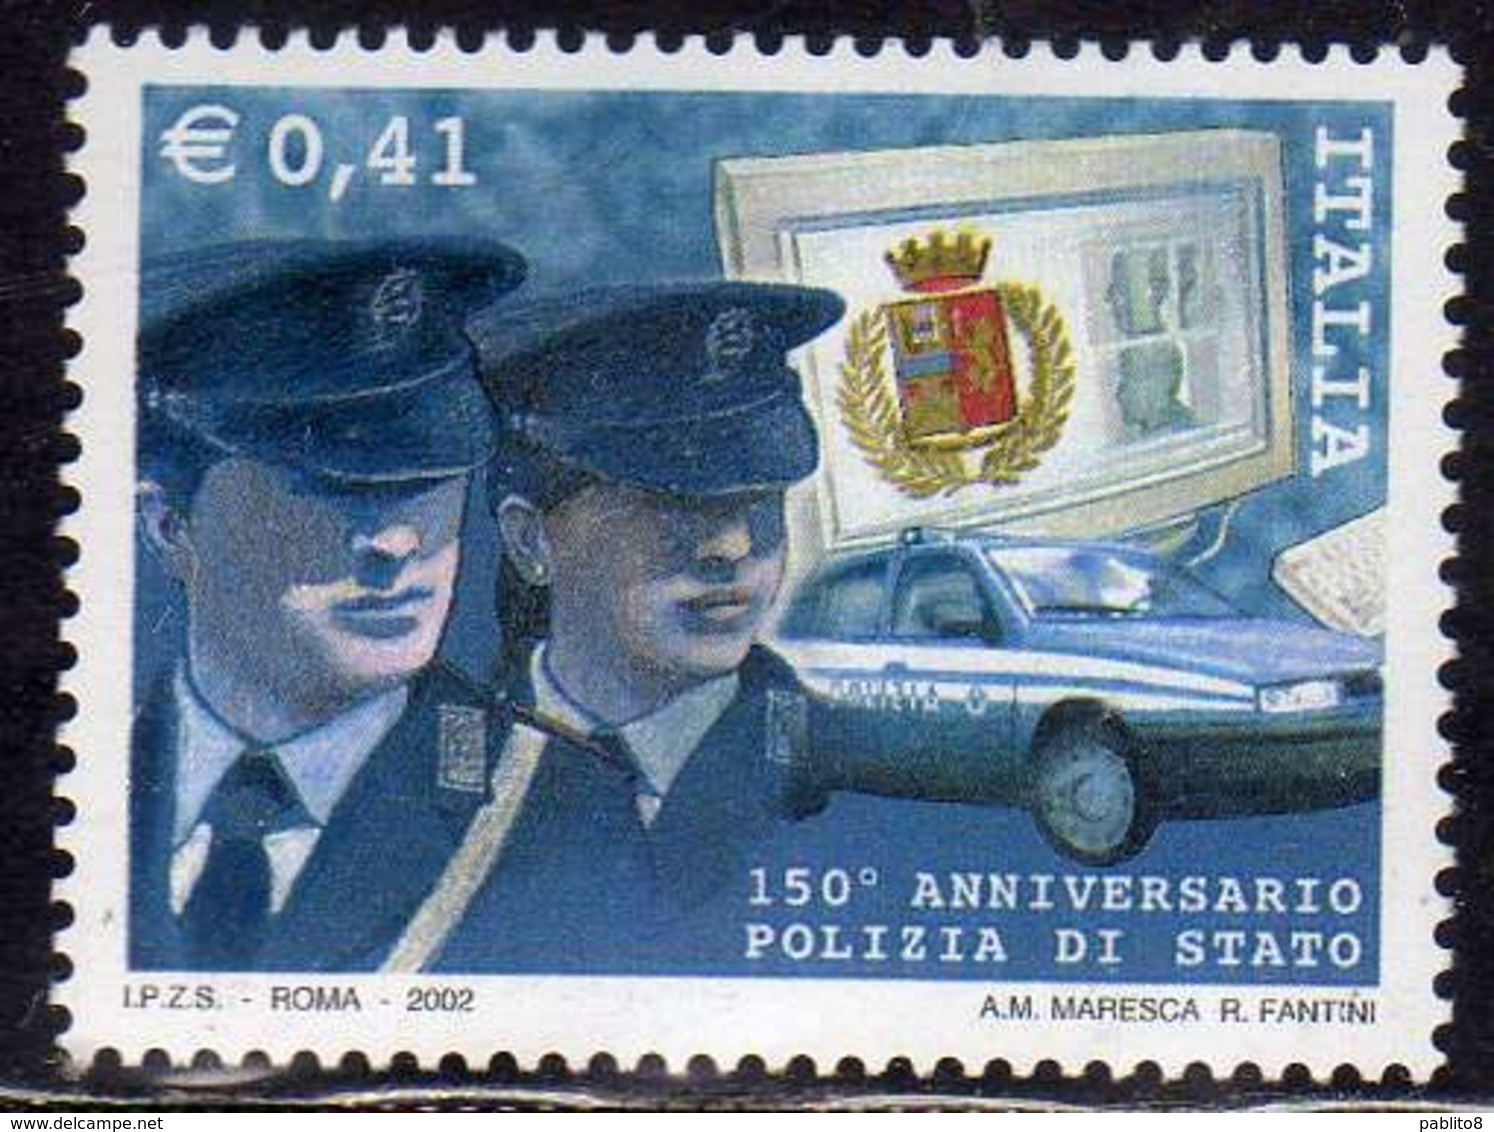 ITALIA REPUBBLICA ITALY REPUBLIC 2002 LE ISTITUZIONI LA POLIZIA DI STATO POLICE € 0,41 MNH - 2001-10: Mint/hinged